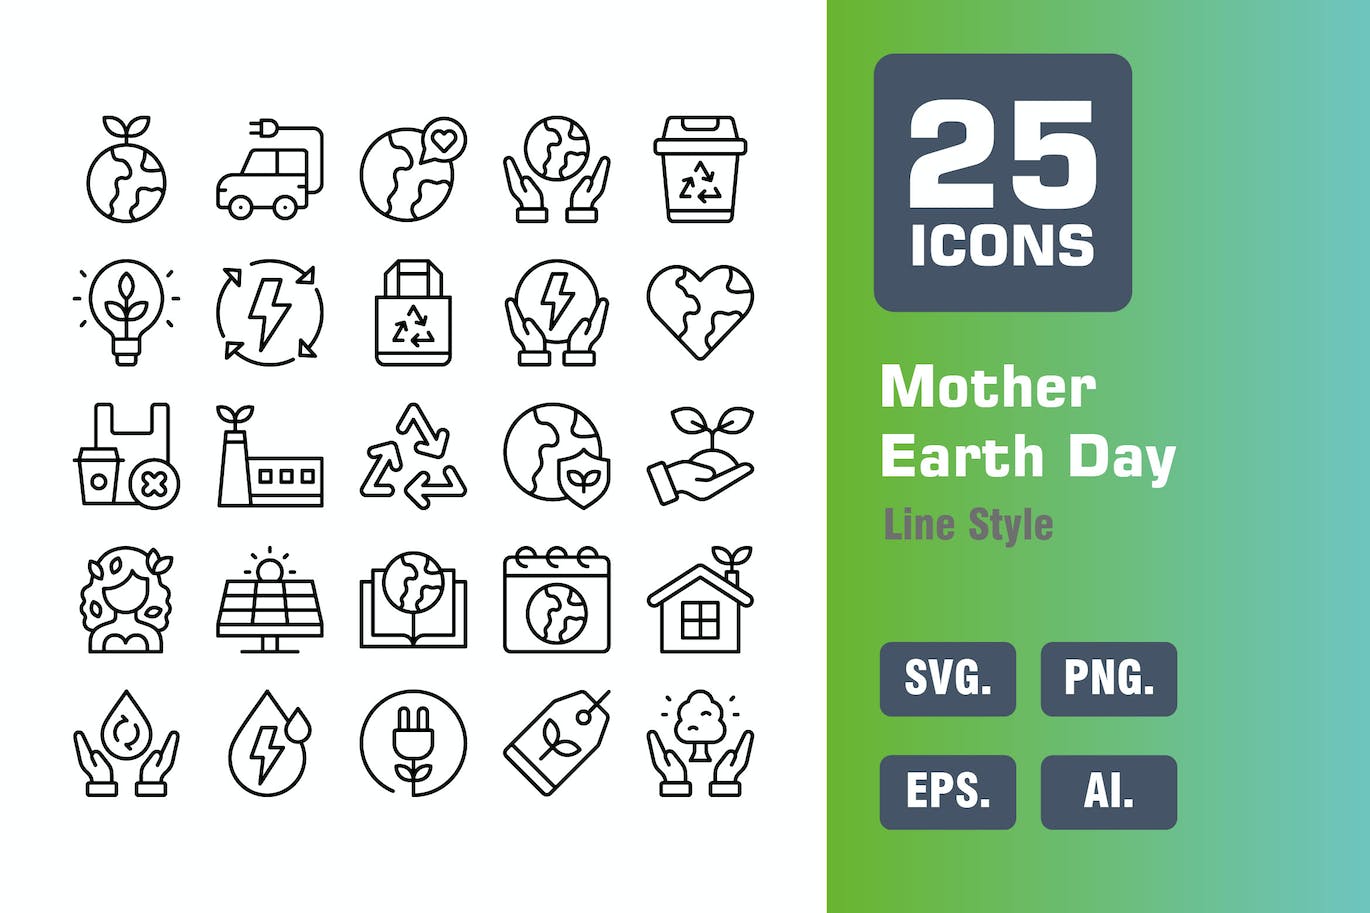 25个地球母亲日线条图标 Mother Earth Day Icon Pack in Line Style 图标素材 第1张